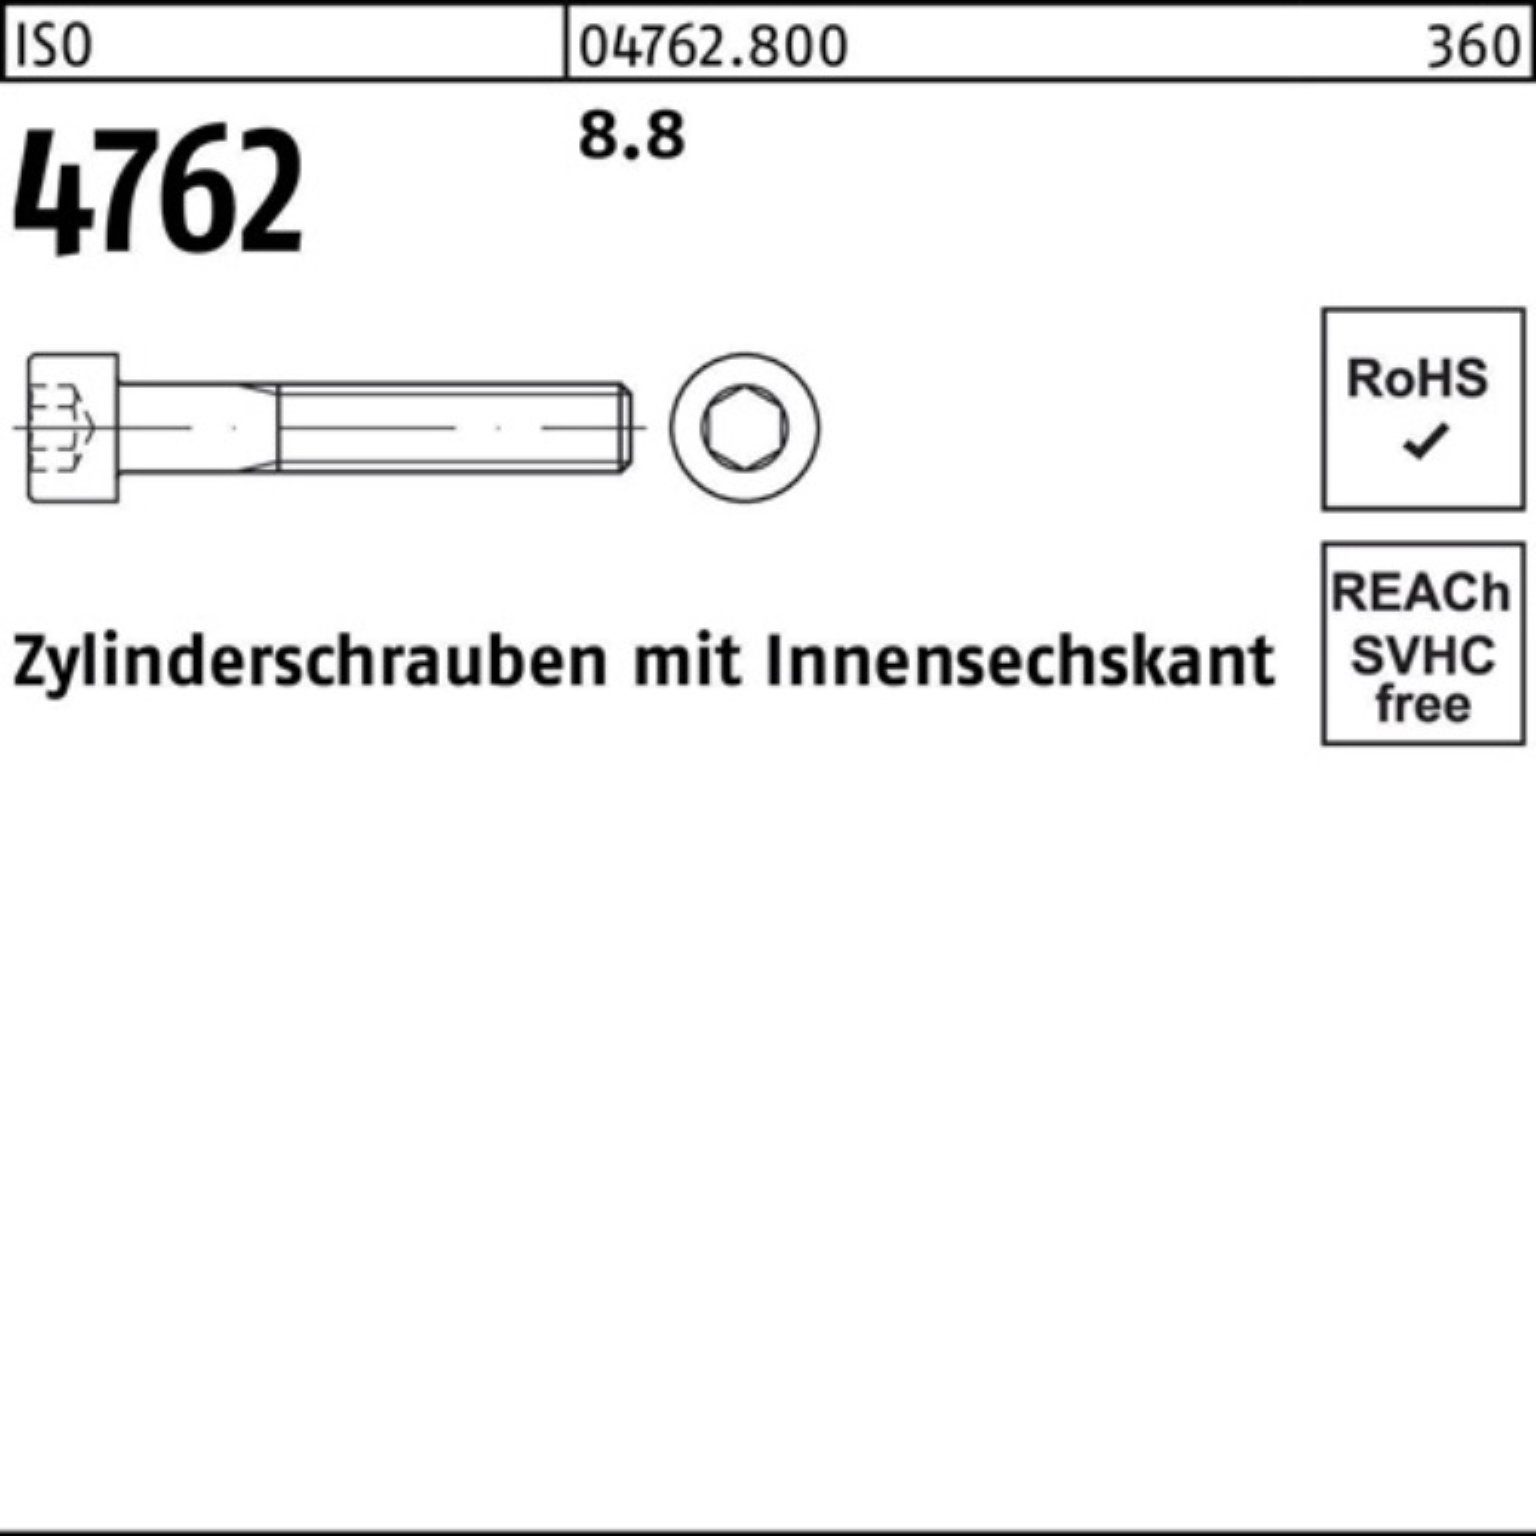 1 Stück Reyher M36x 4762 ISO I Zylinderschraube 100er Zylinderschraube Innen-6kt Pack 330 8.8